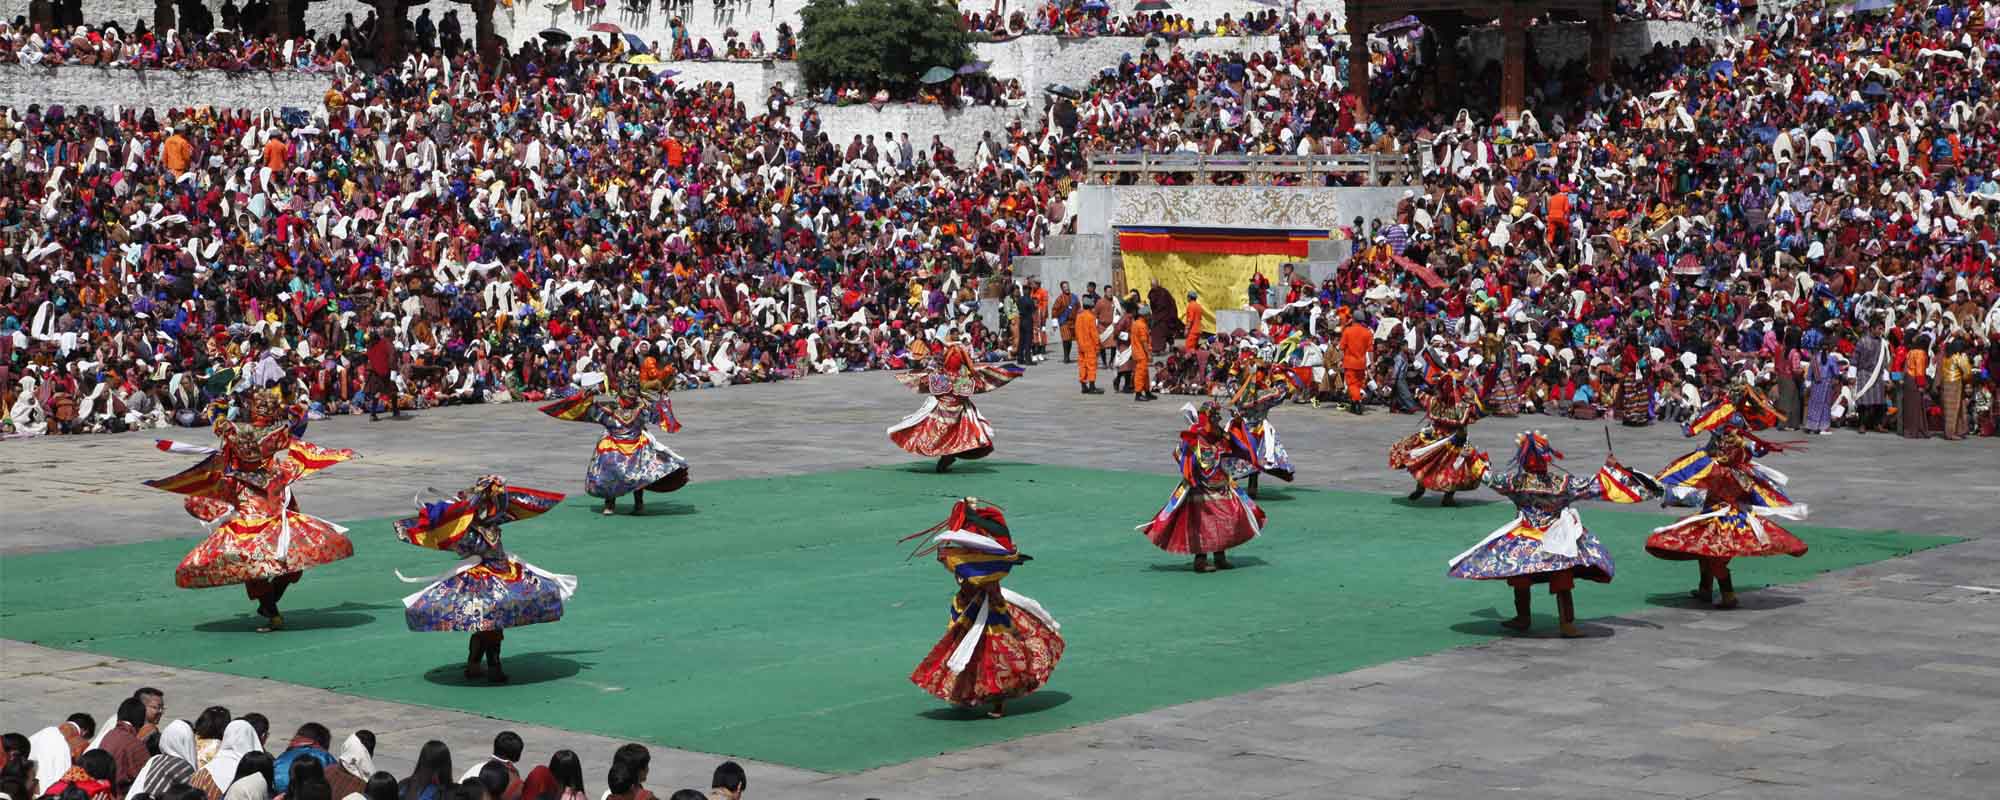 Bhutan Tsechu Festival Tour